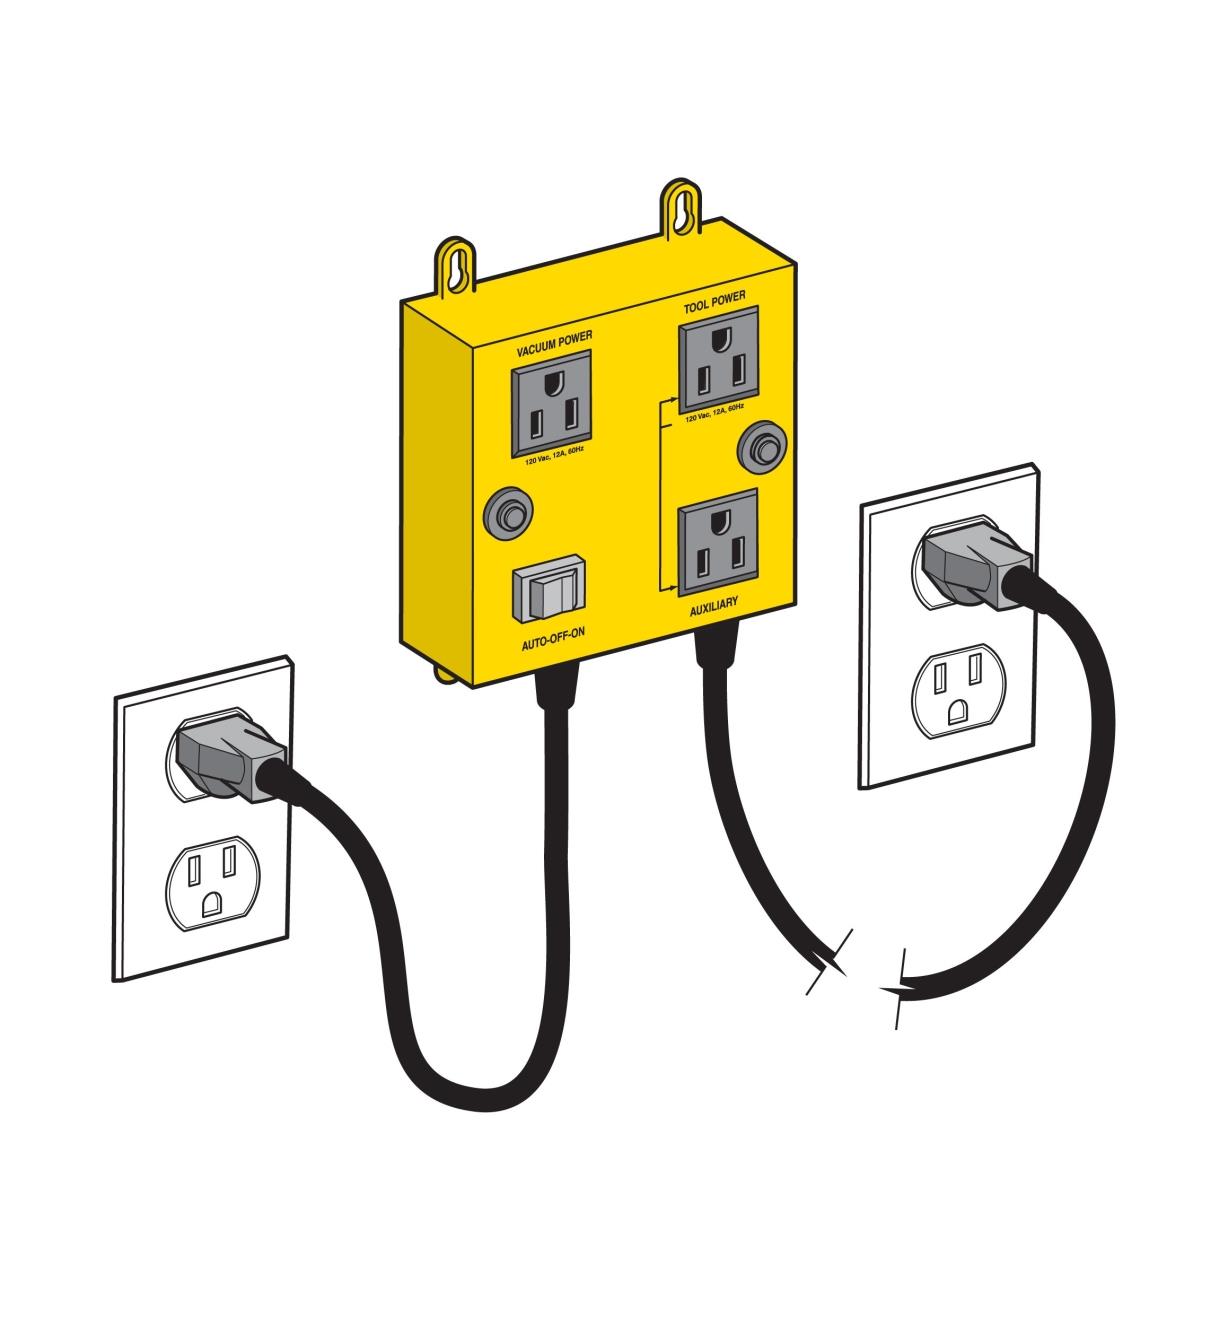 Illustration montrant les deux cordons d’un commutateur automatique pour dépoussiéreur iVAC branchés dans deux circuits séparés